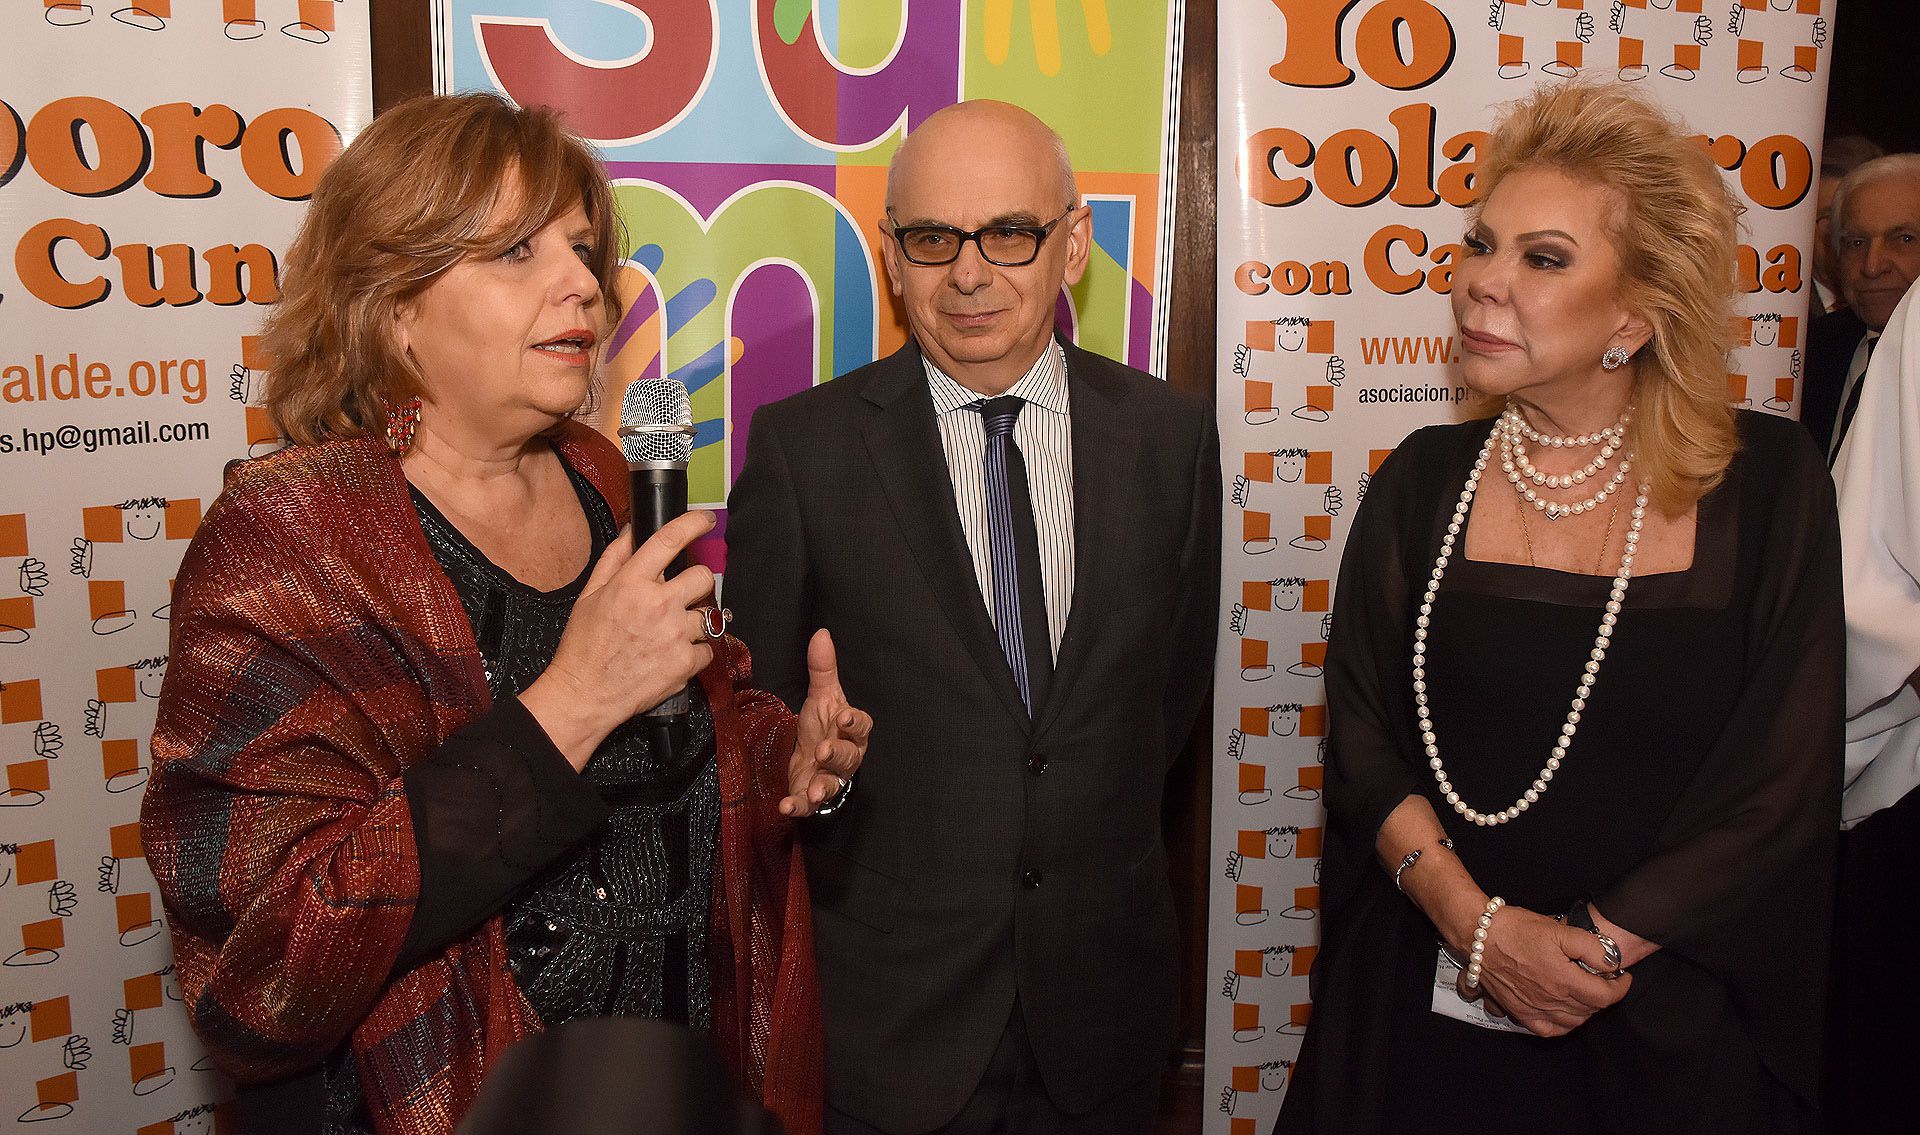 La ministra Bou Pérez pronunció también unas palabras